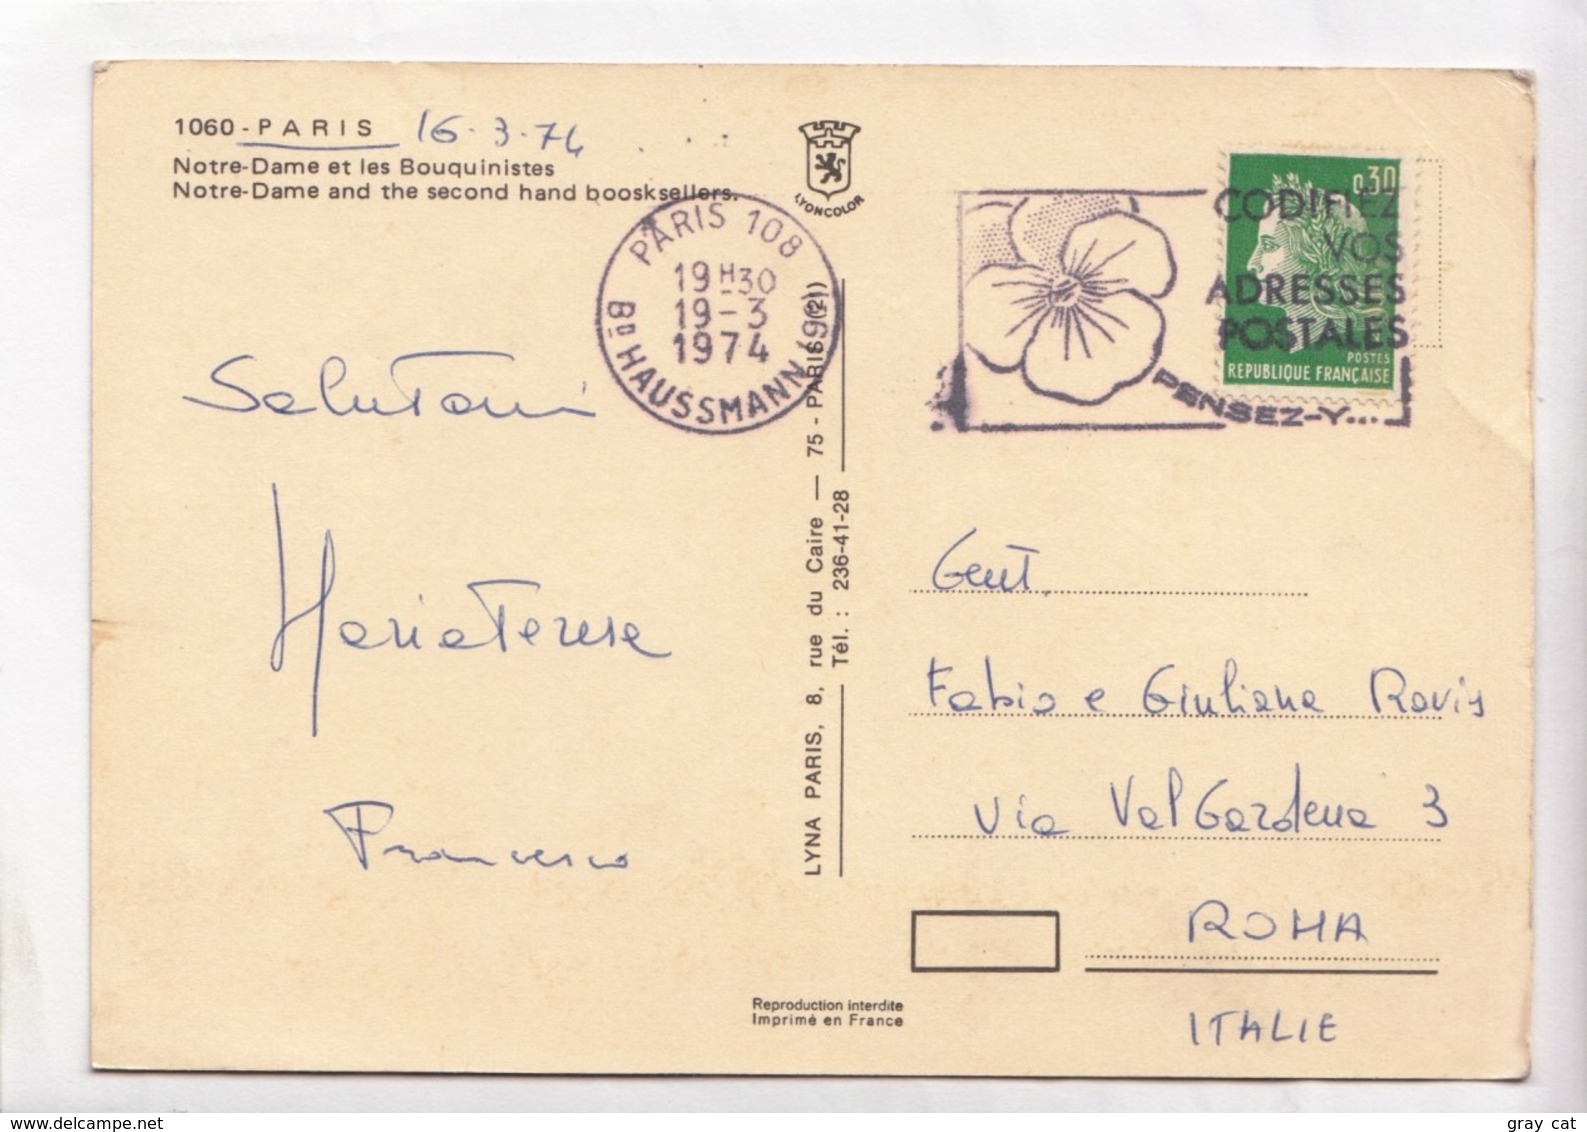 PARIS, Notre-Dame Et Les Bouquinistes, 1974 Used Postcard [23535] - Notre Dame De Paris